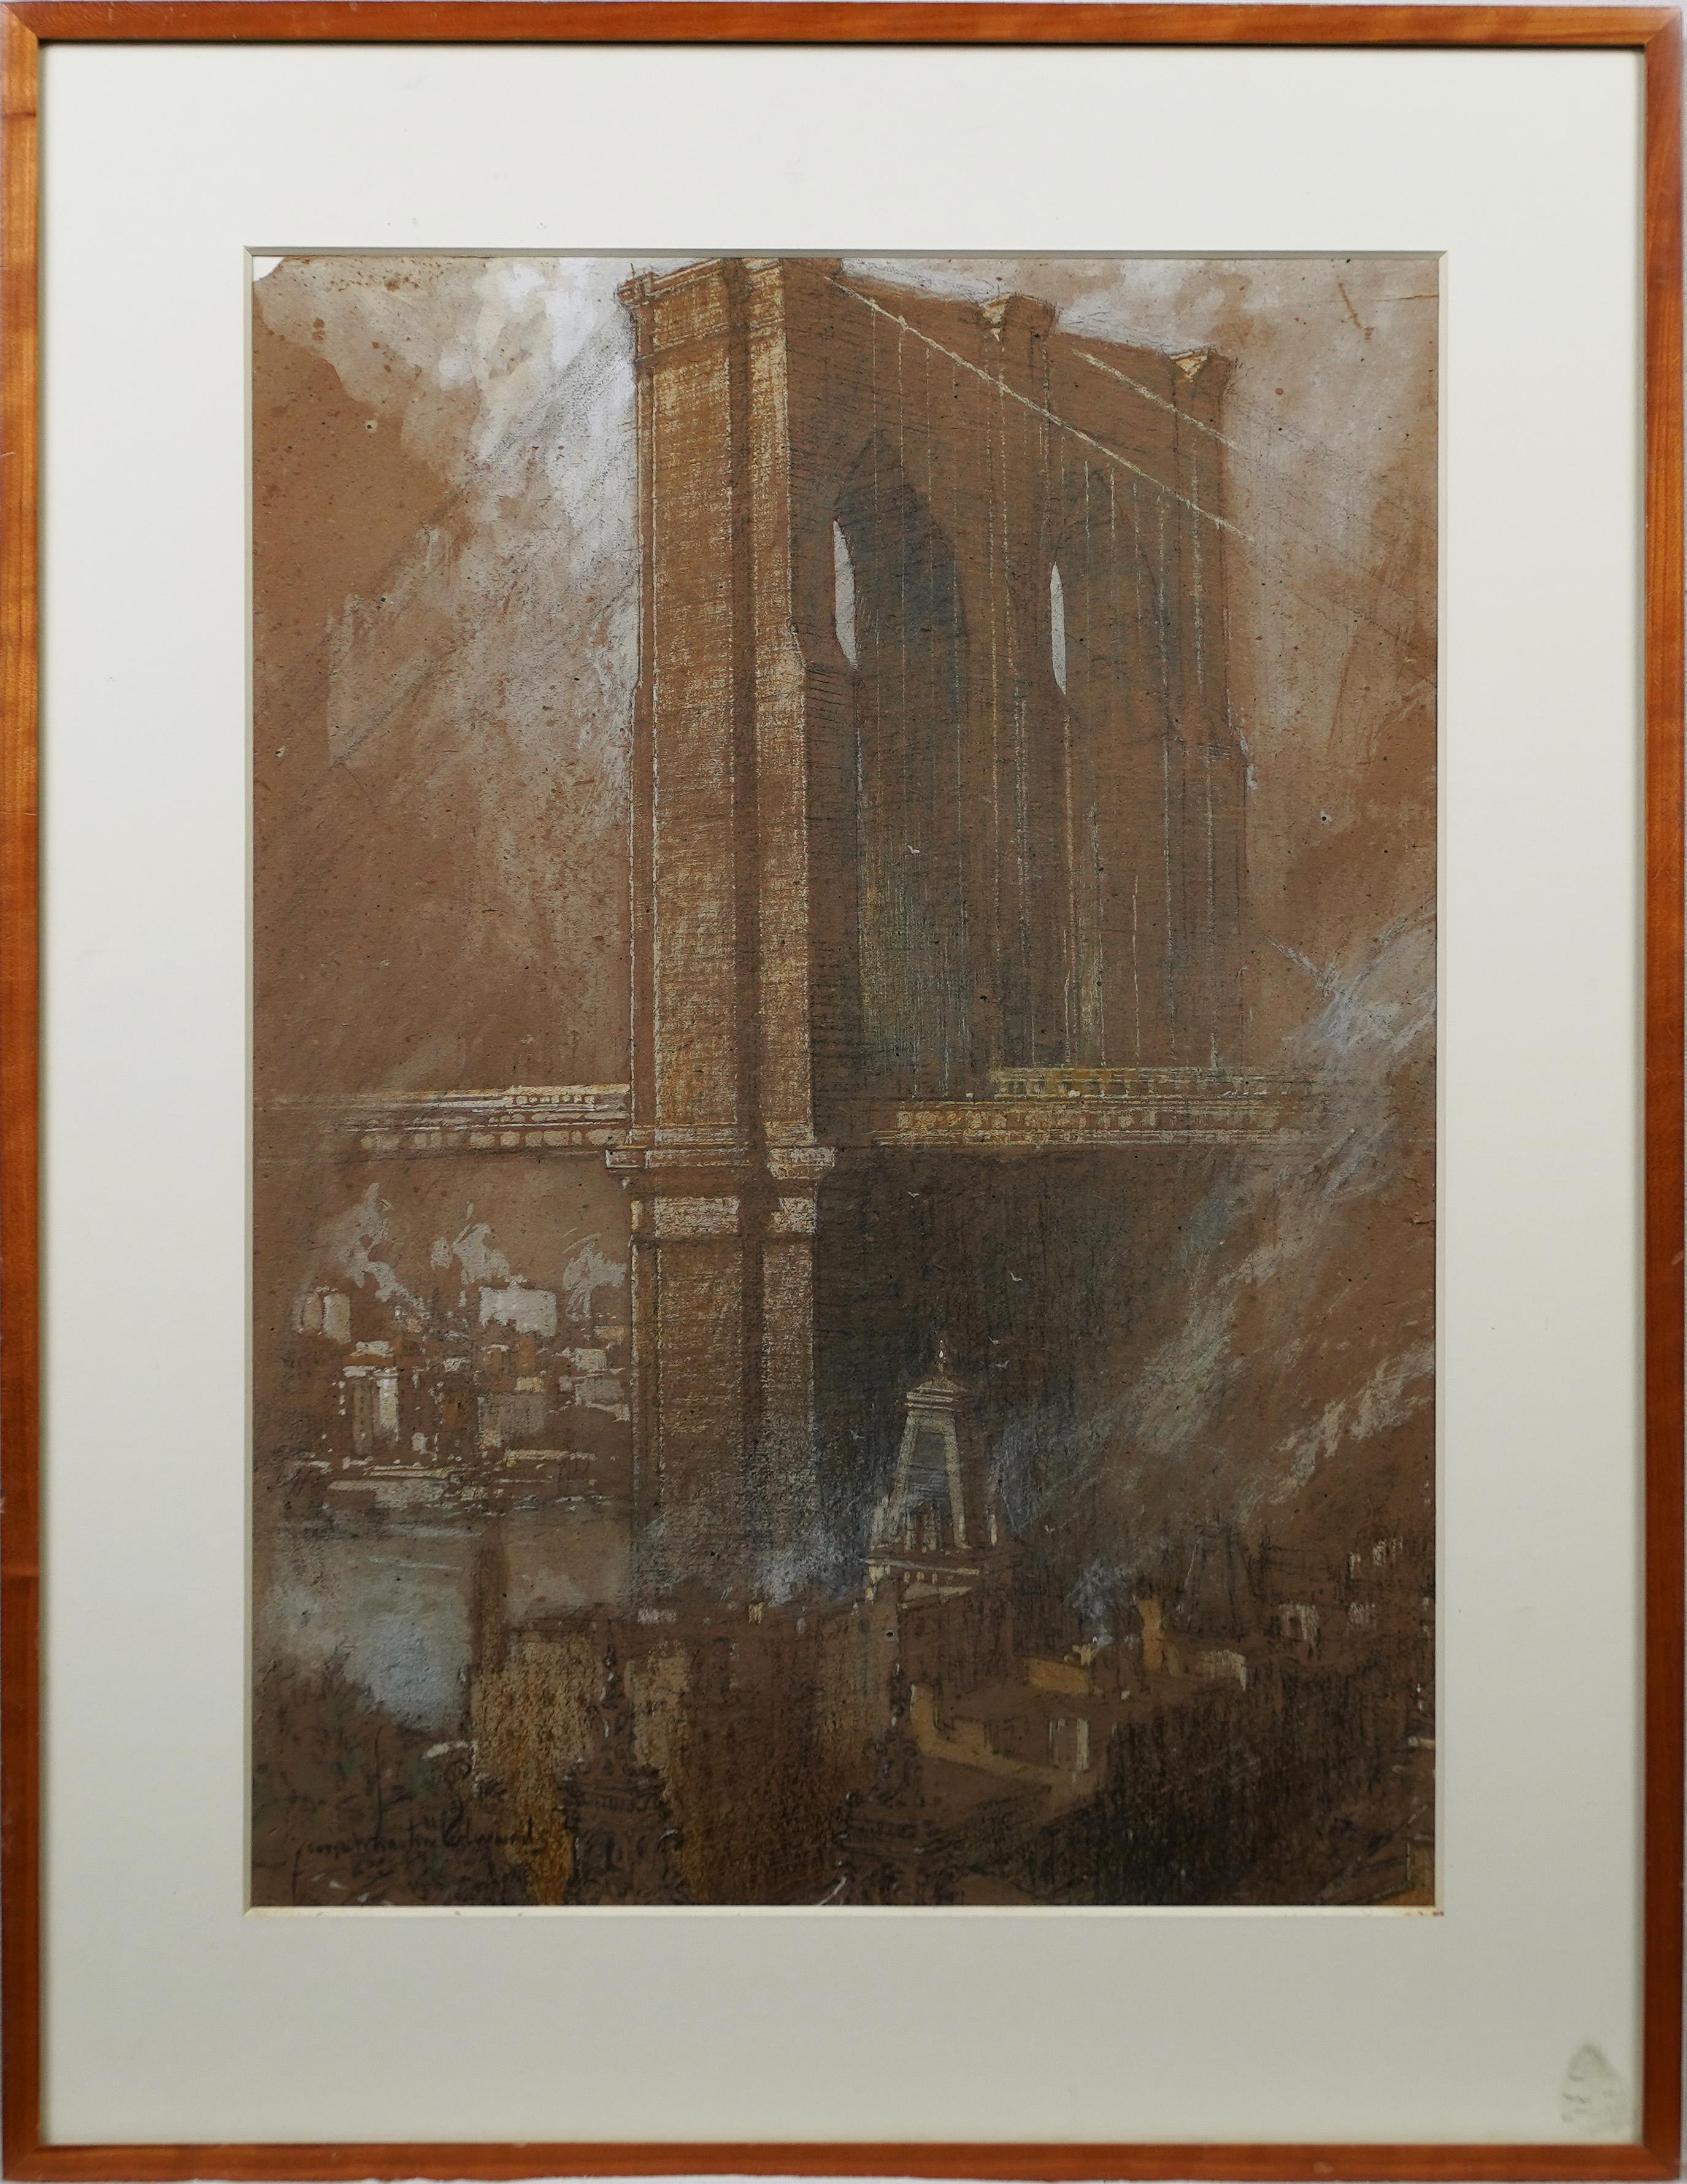 Importante peinture rare de l'école Ashcan signée Brooklyn Bridge, vue de la ville de New York - Painting de George Wharton Edwards